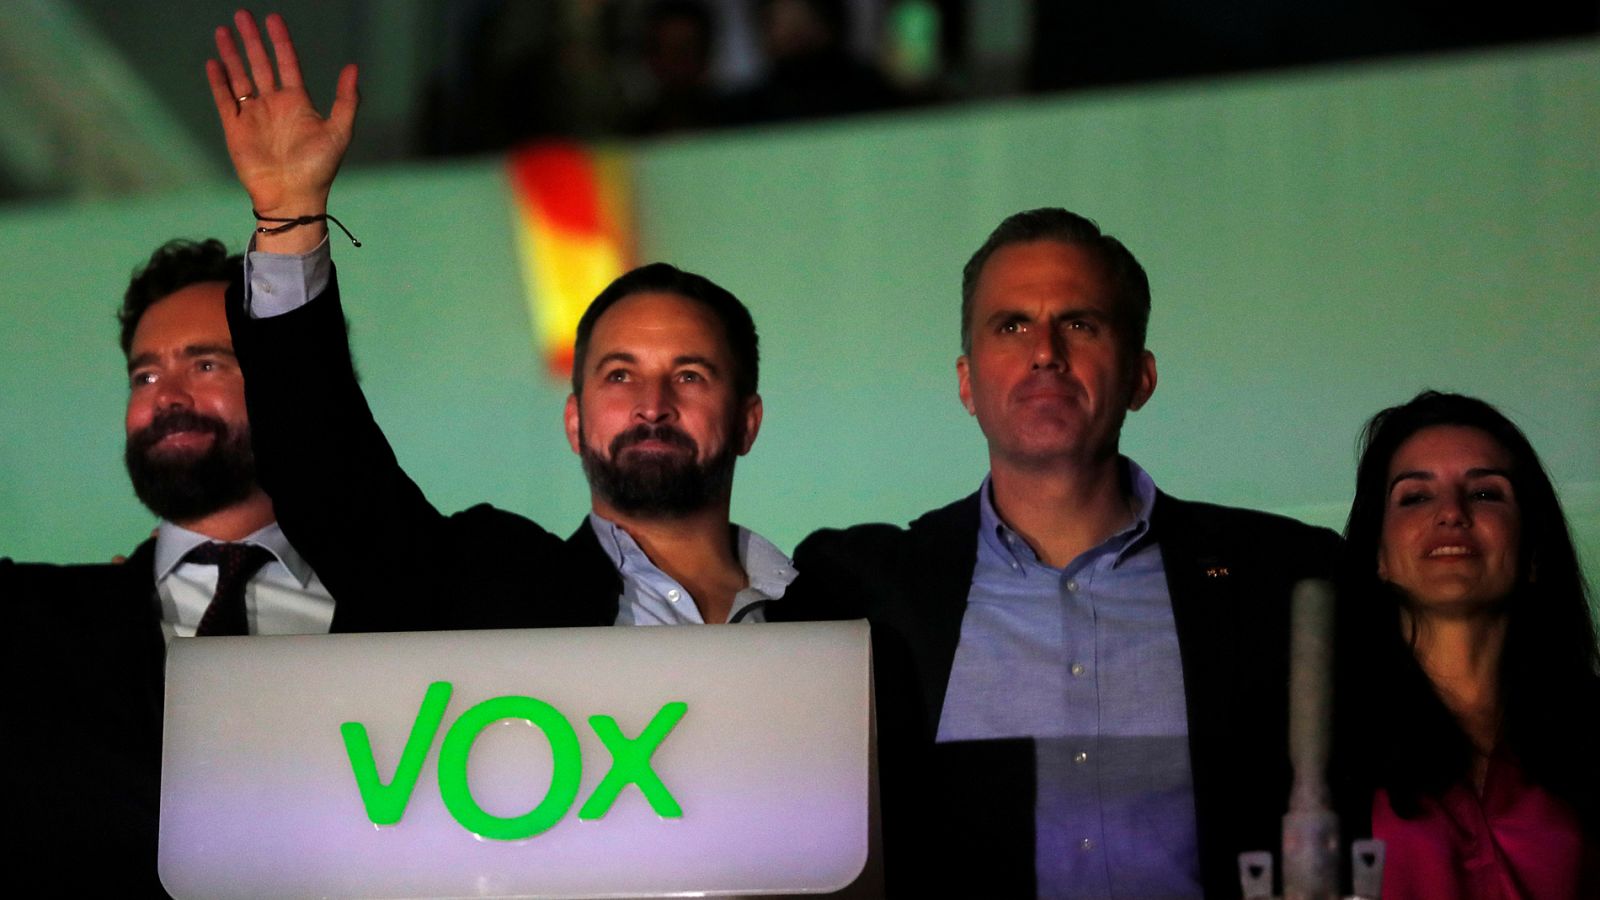 Elecciones generales | Vox se muestra prudente tras su ascenso a tercera fuerza política - RTVE.es